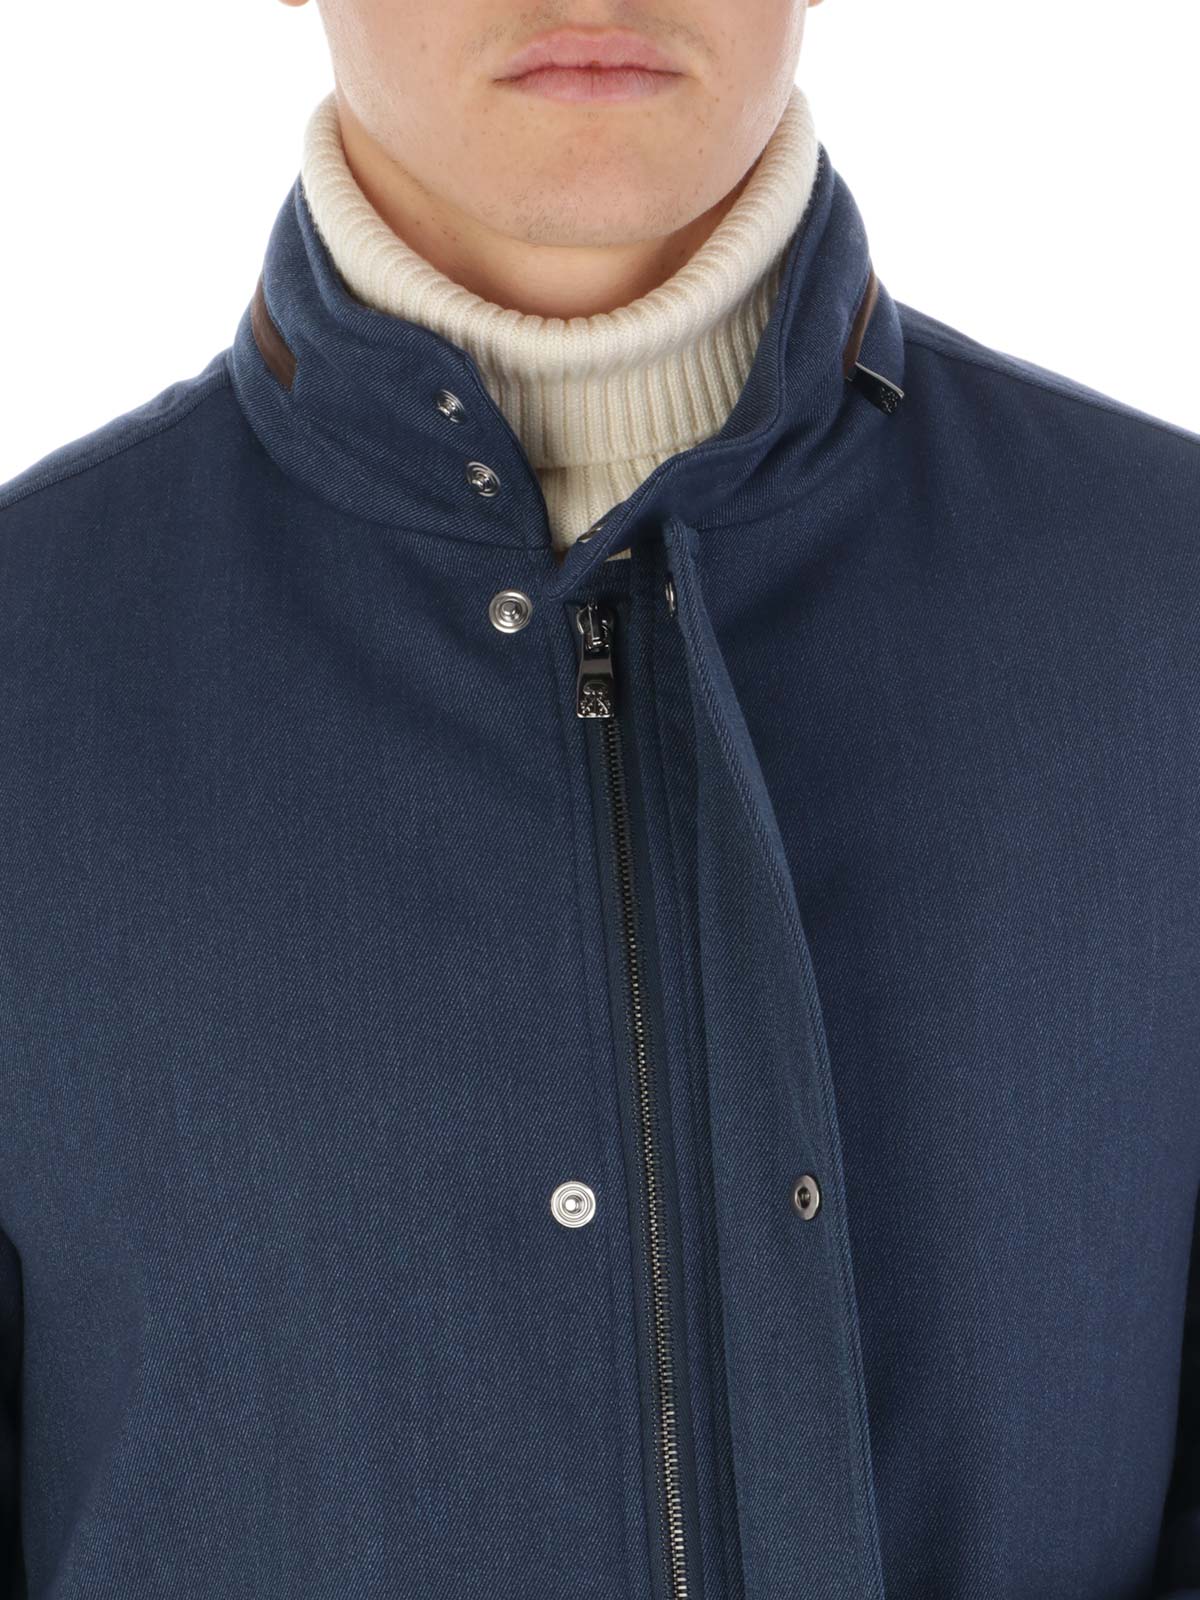 CORNELIANI Men's Eco Friendly Wool Jacket Blue 902H72 2818211 Botta  B  Online Store